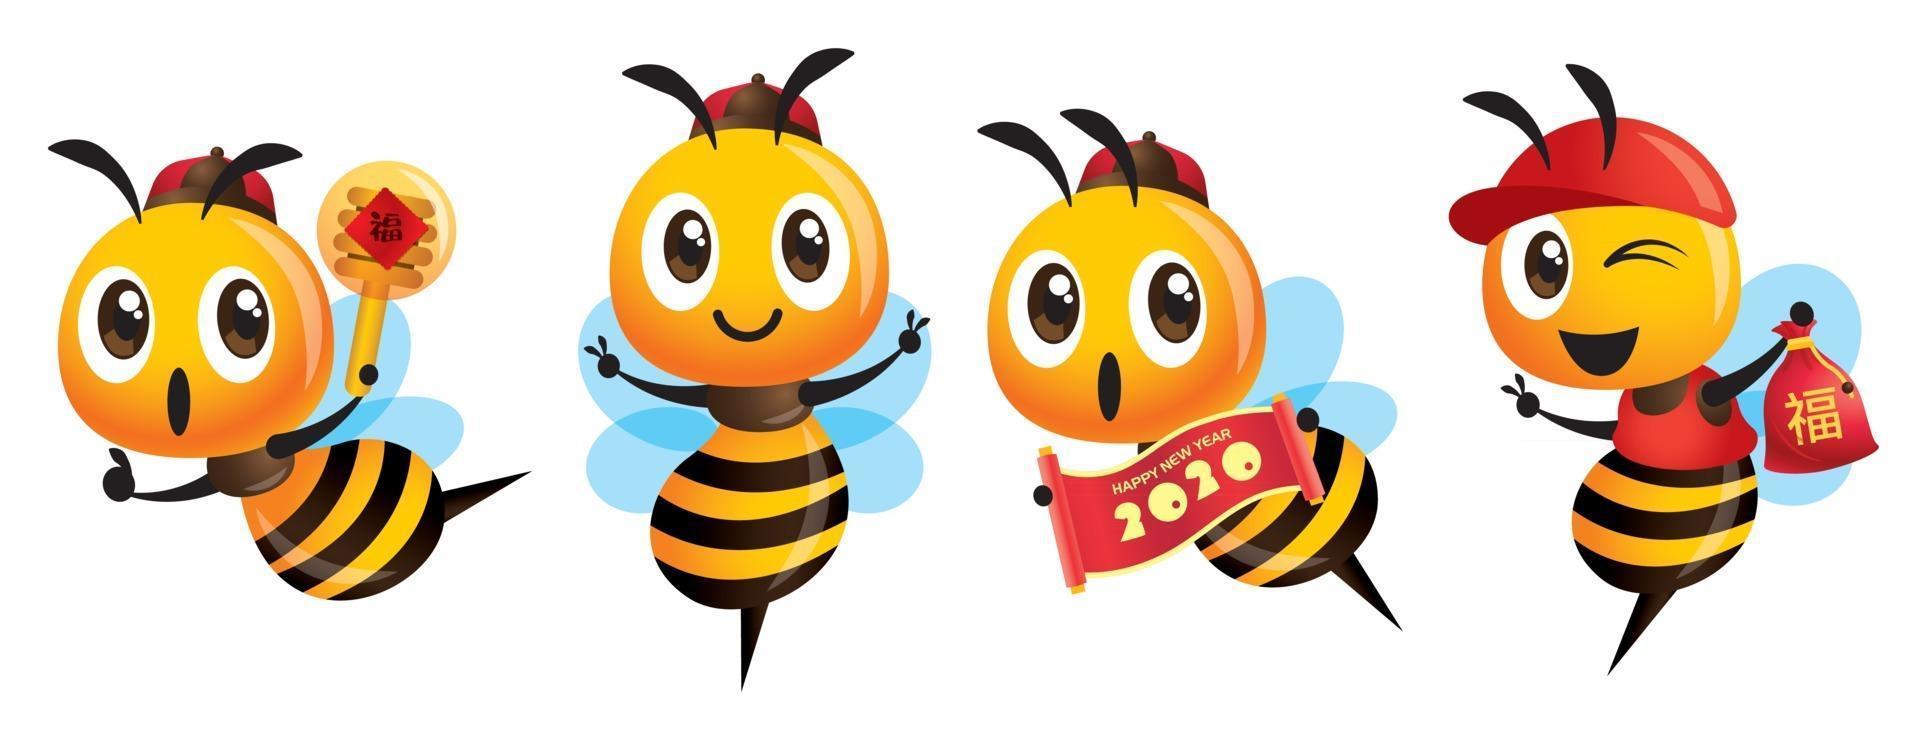 Desenho animado fofo mascote de abelha com tampa chinesa comemorando o ano novo chinês vetor